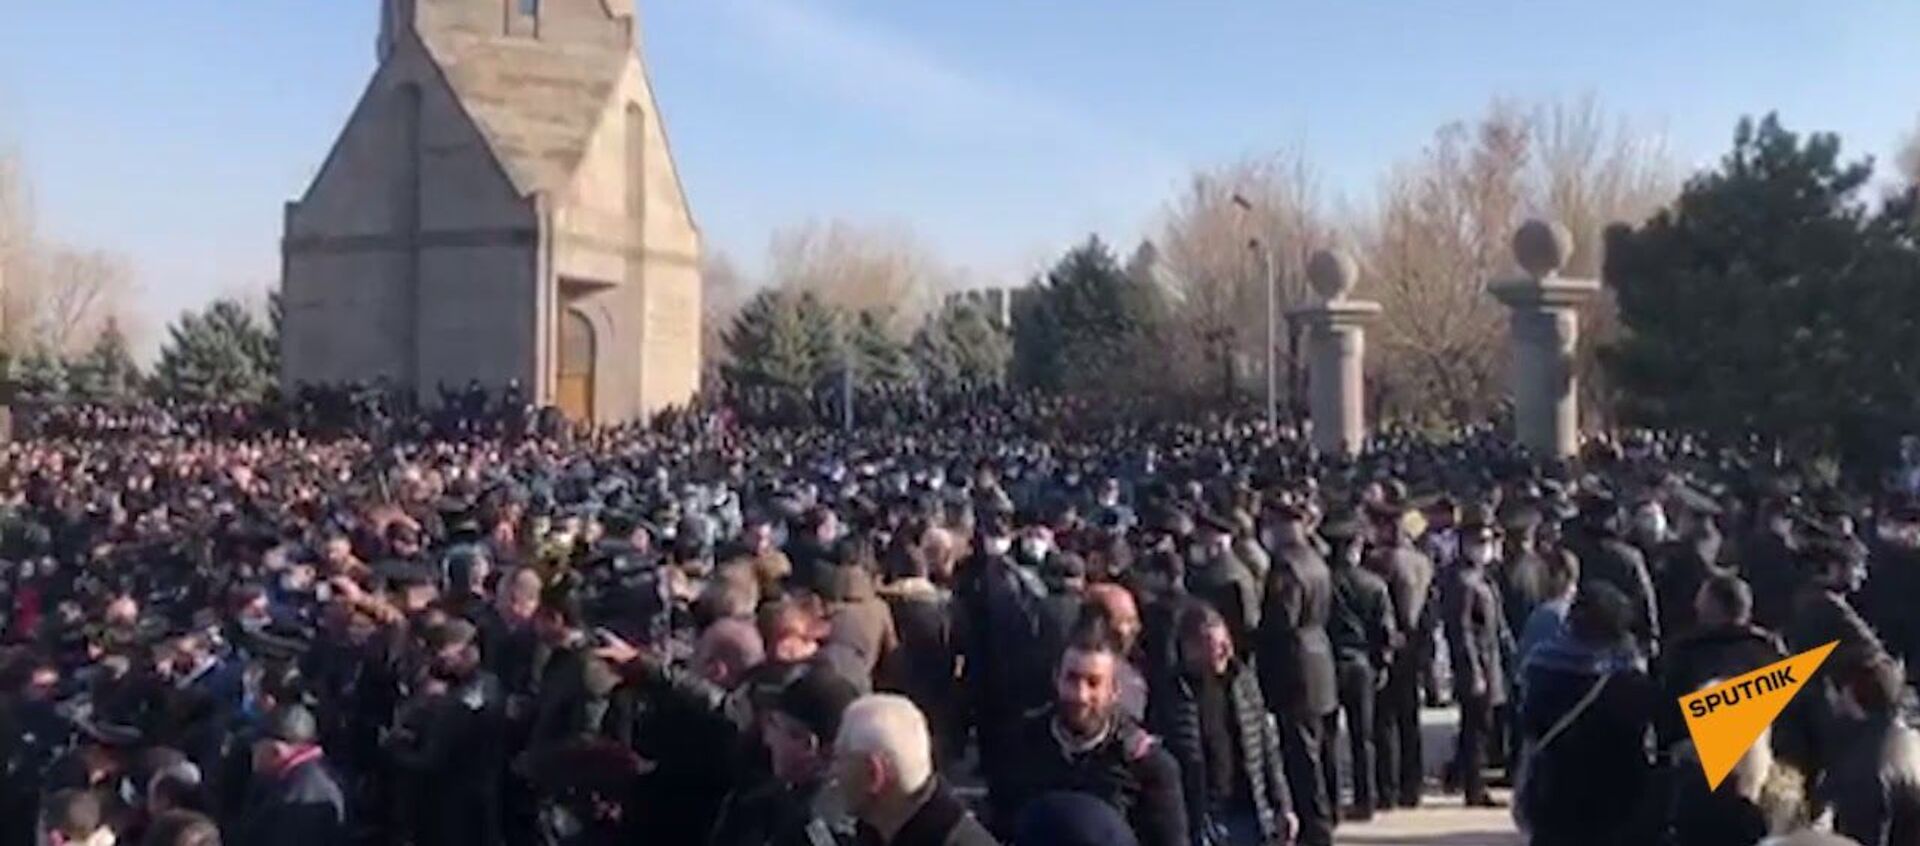 Пашинян со сторонниками прорвались на военное кладбище в Армении — видео - Sputnik Кыргызстан, 1920, 19.12.2020